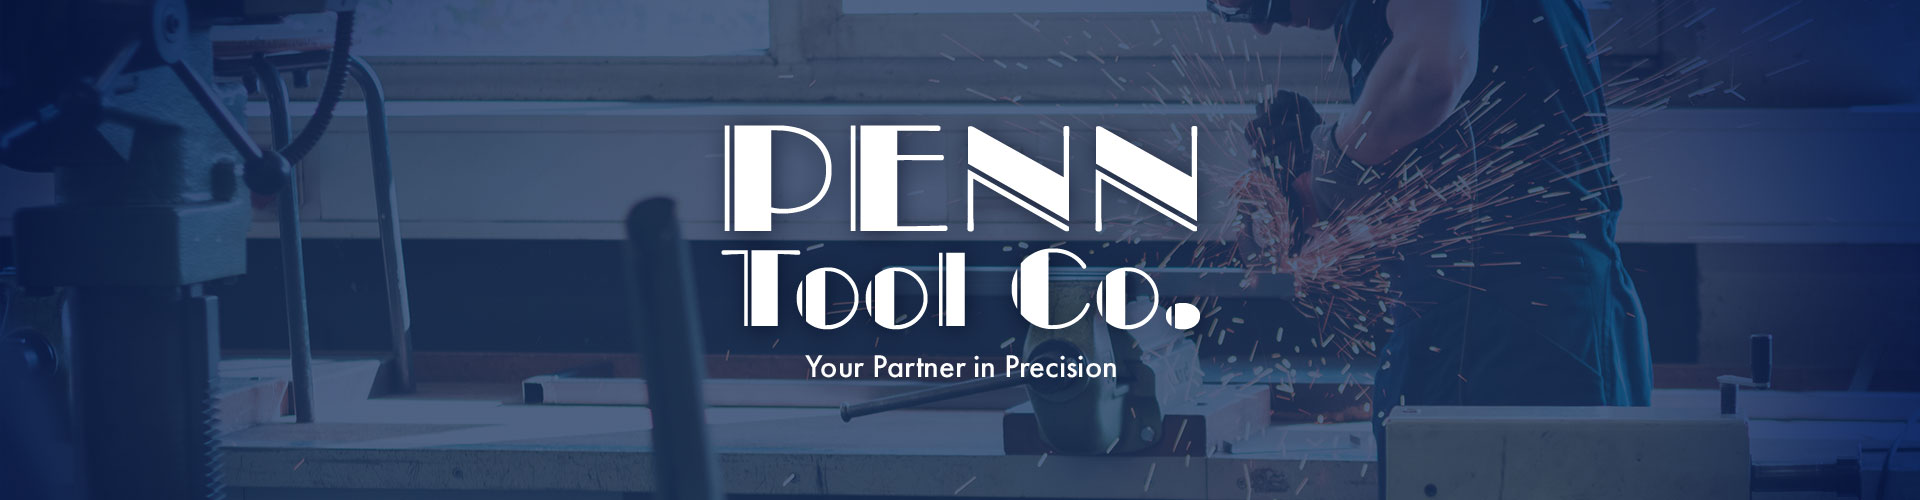 Penn Tool Co. banner